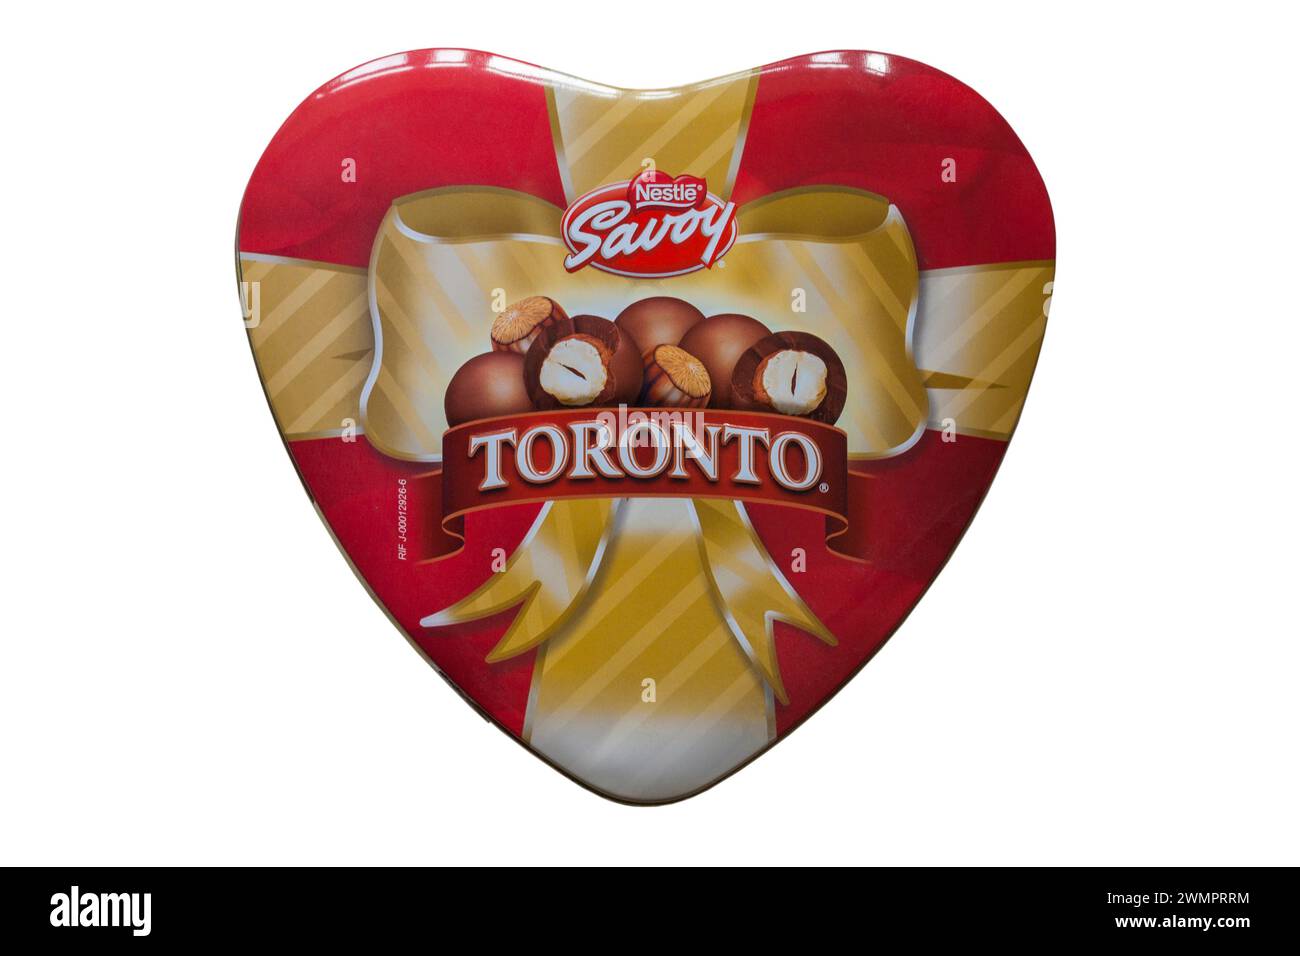 Barattolo di Nestlé Savoy Toronto isolato su sfondo bianco - nocciola ricoperta di cioccolato Foto Stock